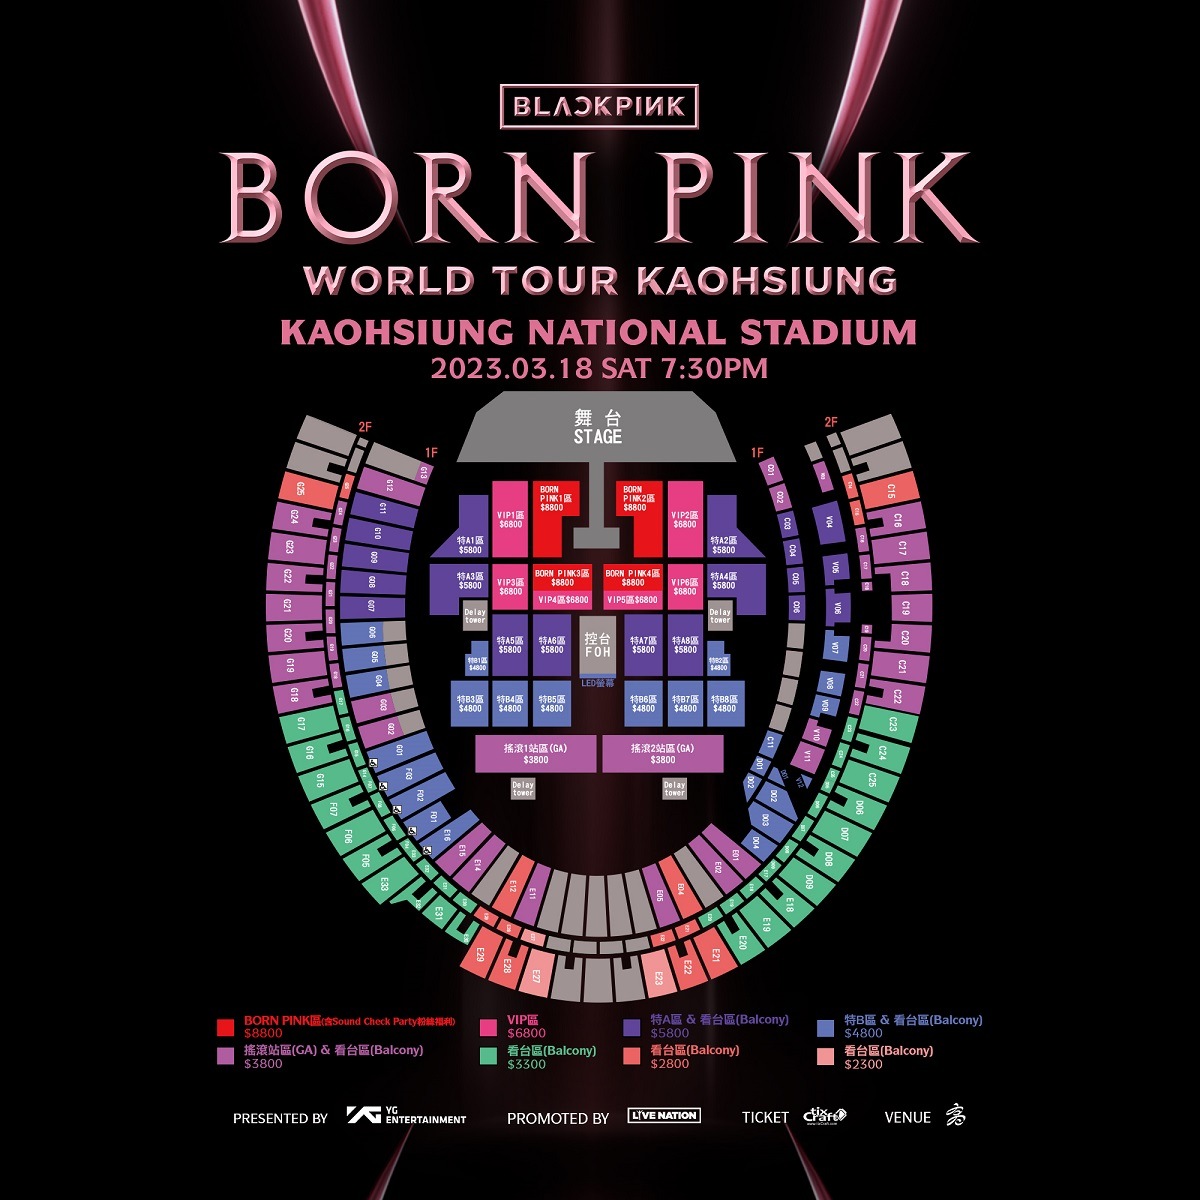 BLACKPINK 高雄演唱會 2023 座位圖 Seating Plan